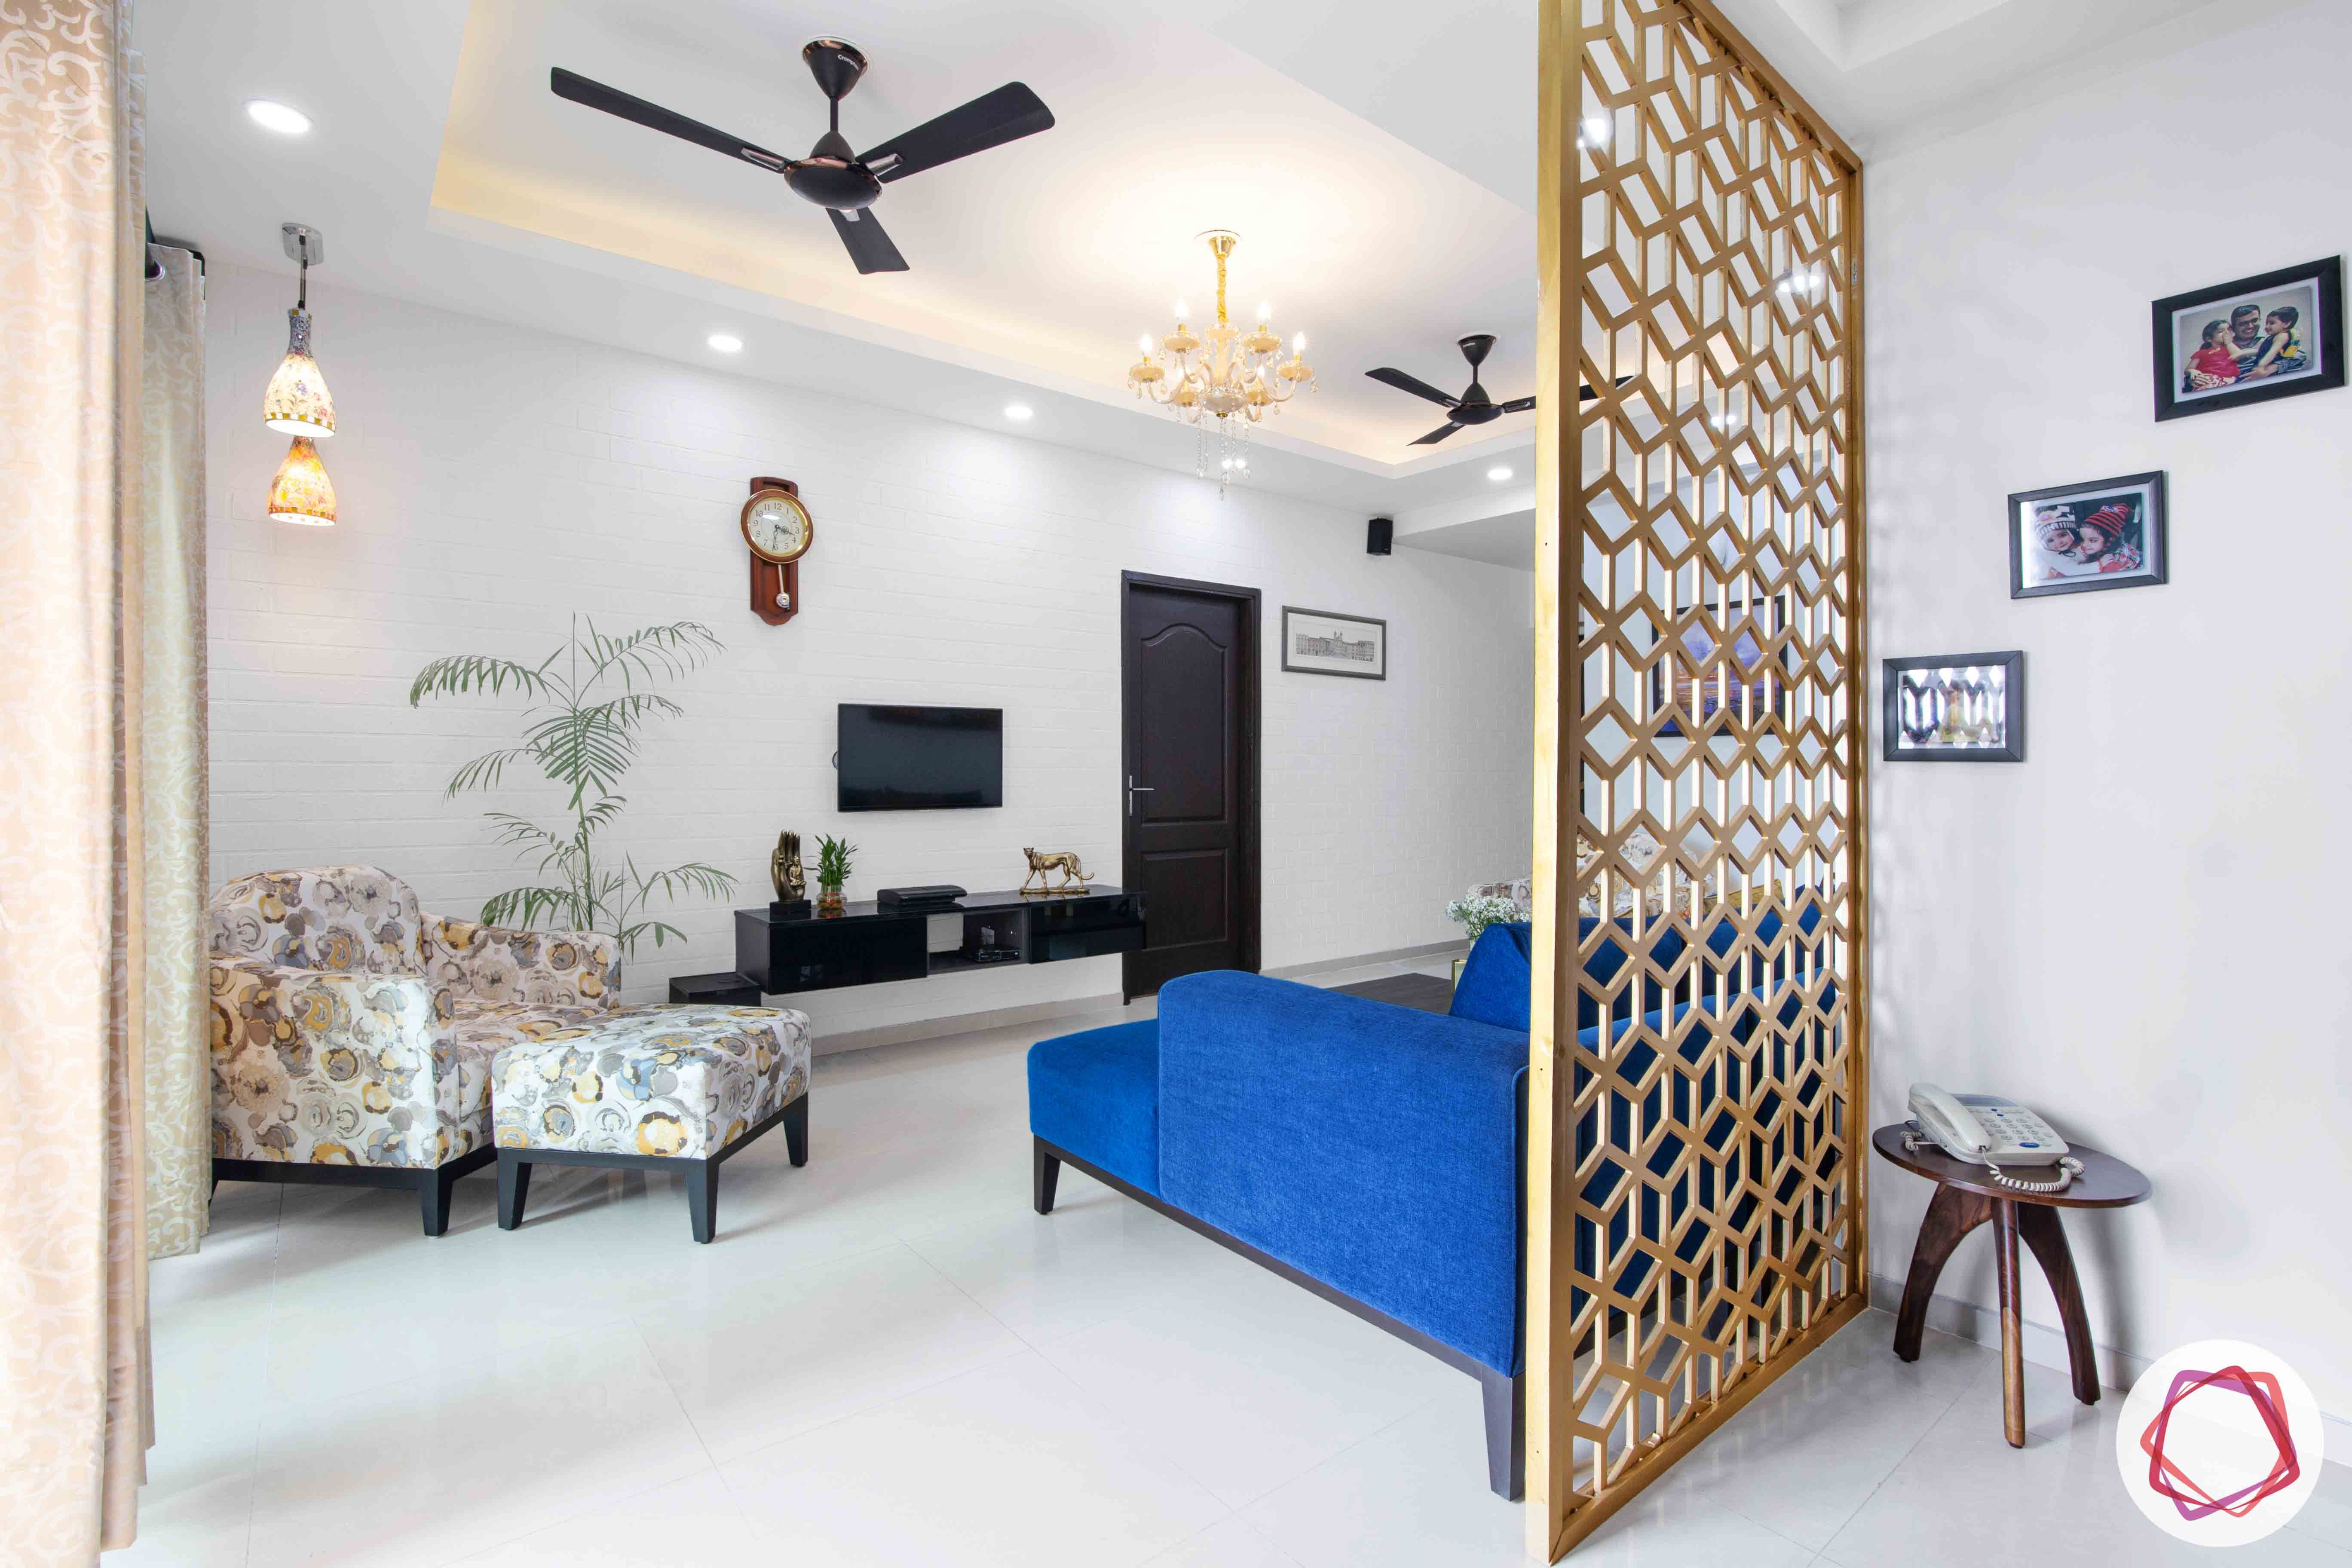 3bhk flat interior design-jaali partition designs-white ottoman designs